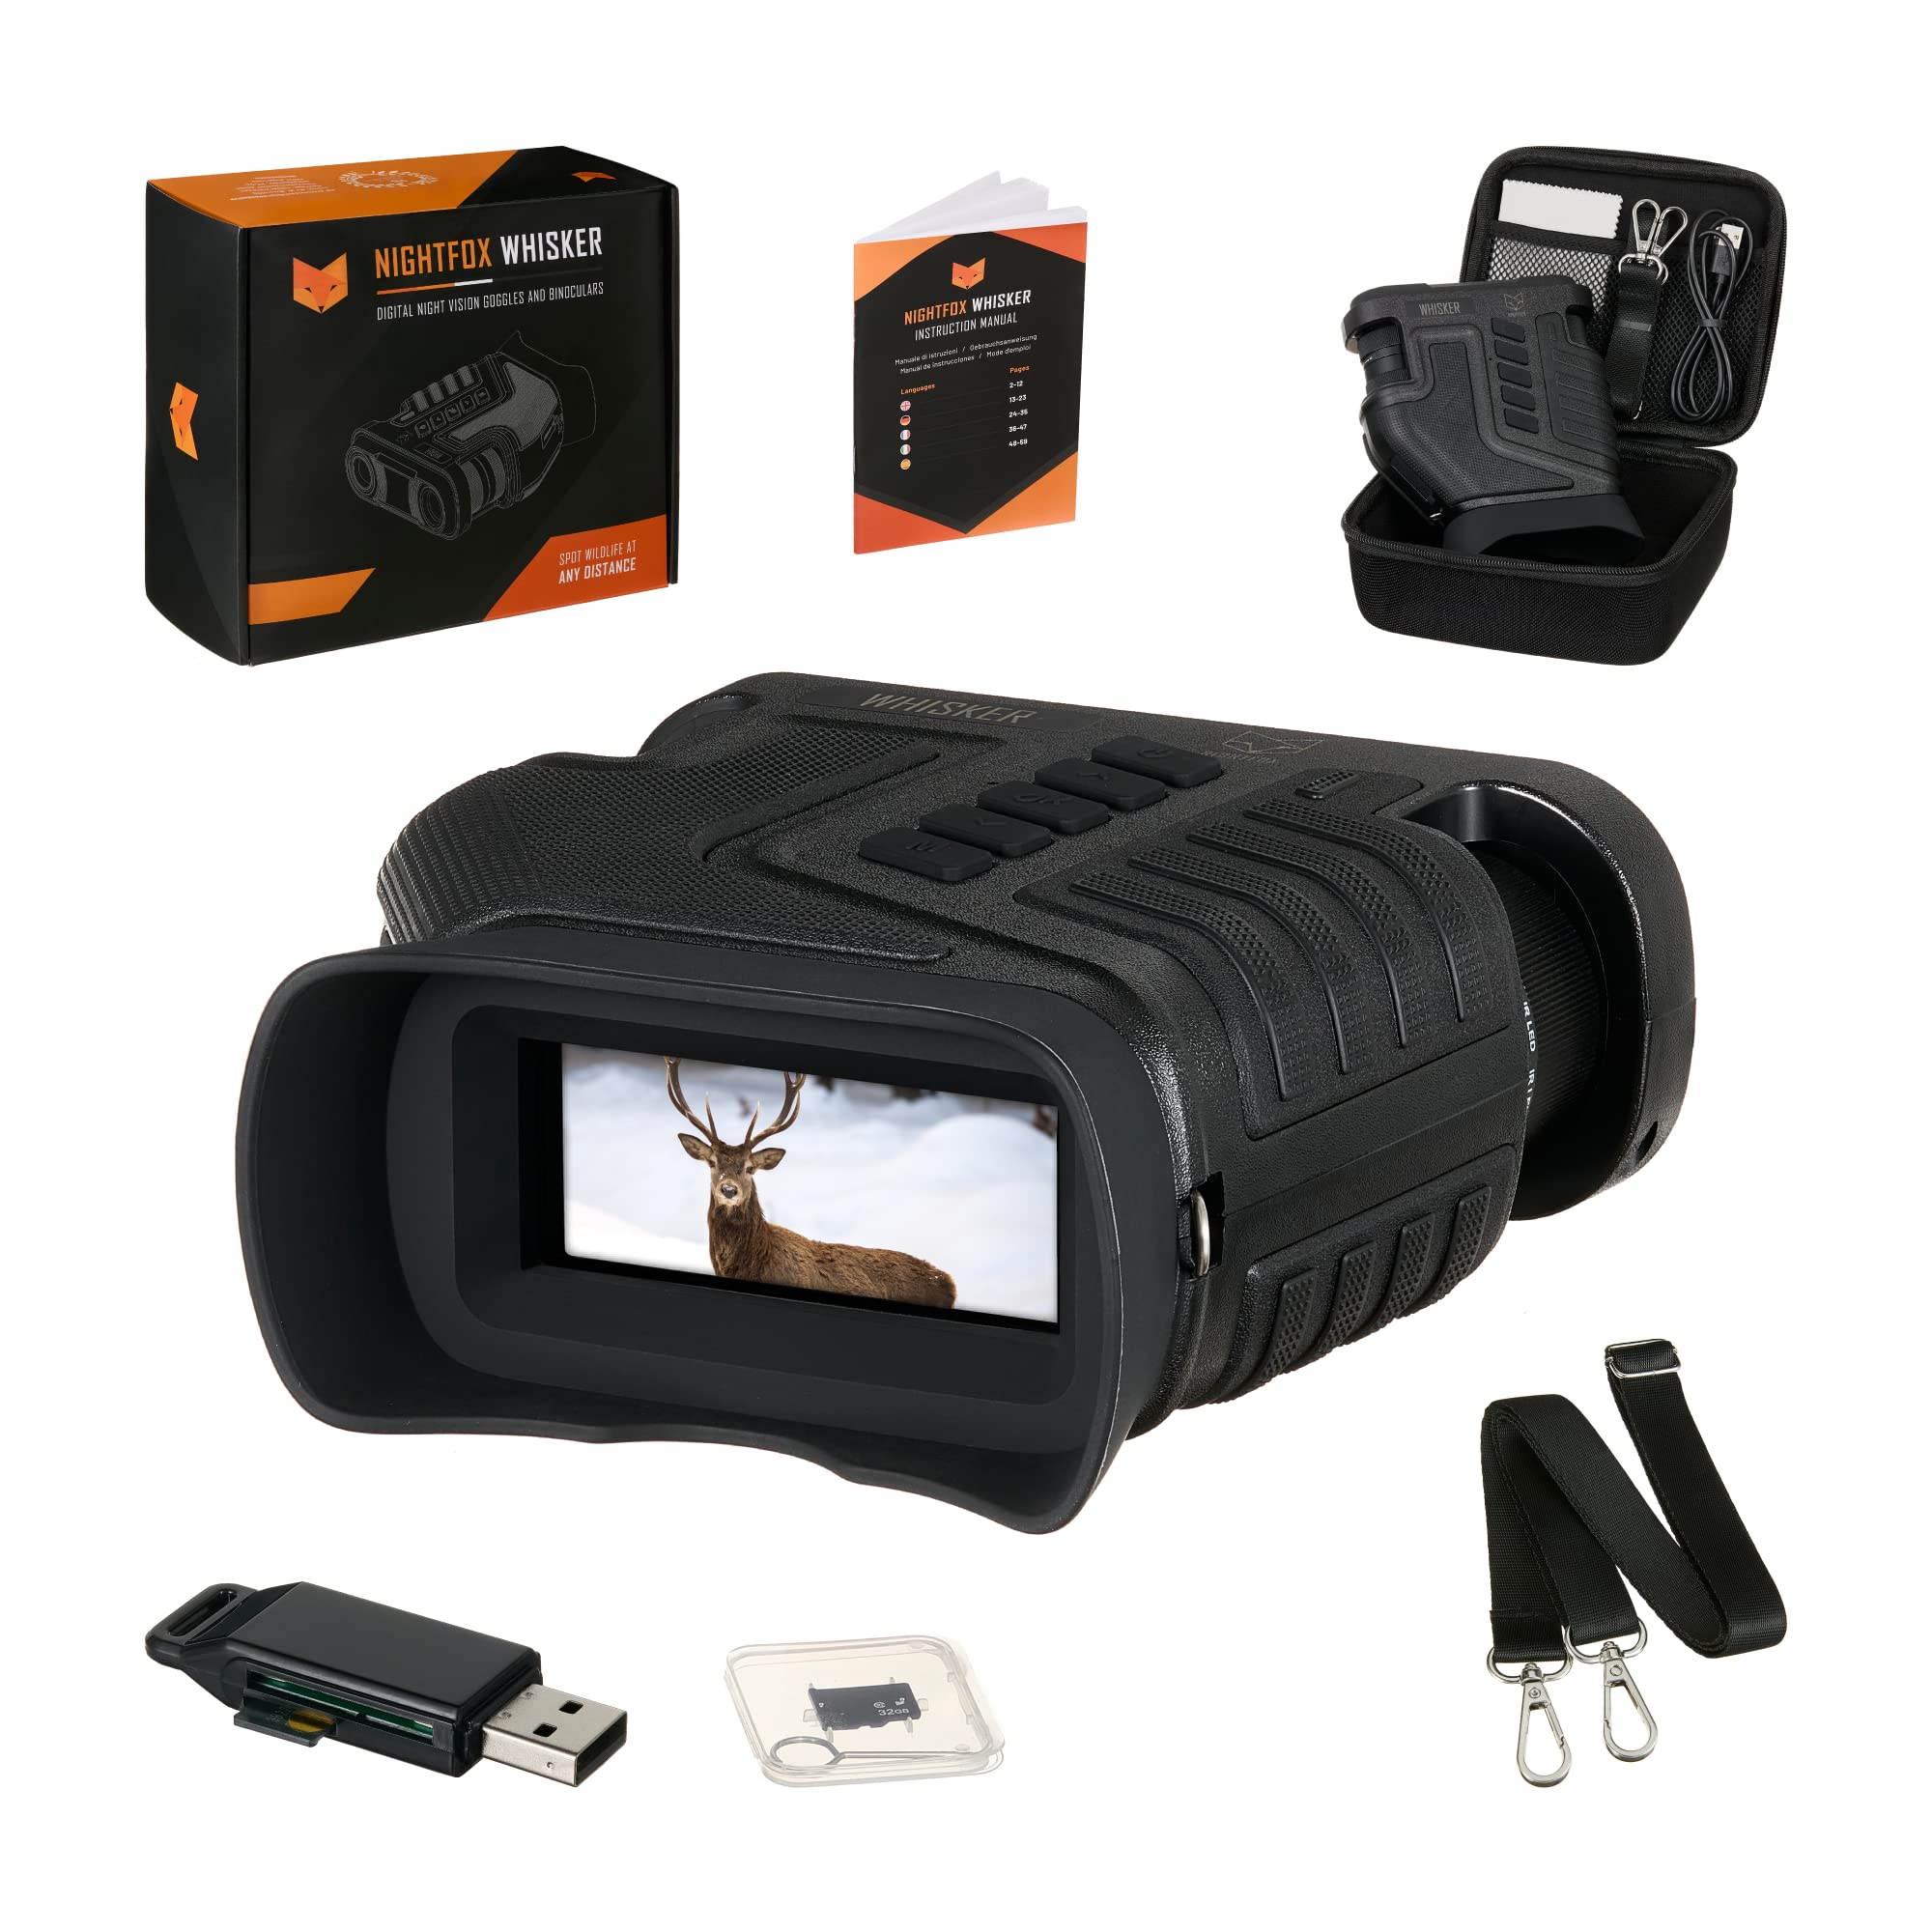 Nightfox Whisker Nachtsichtgerät mit Kamera| Einstellbarer 1-10x optischer Zoom | 275m Reichweite | HD Aufnahmefunktion, via USB wiederaufladbar | 32GB Speicher | Digitales Fernglas mit Nachtsicht